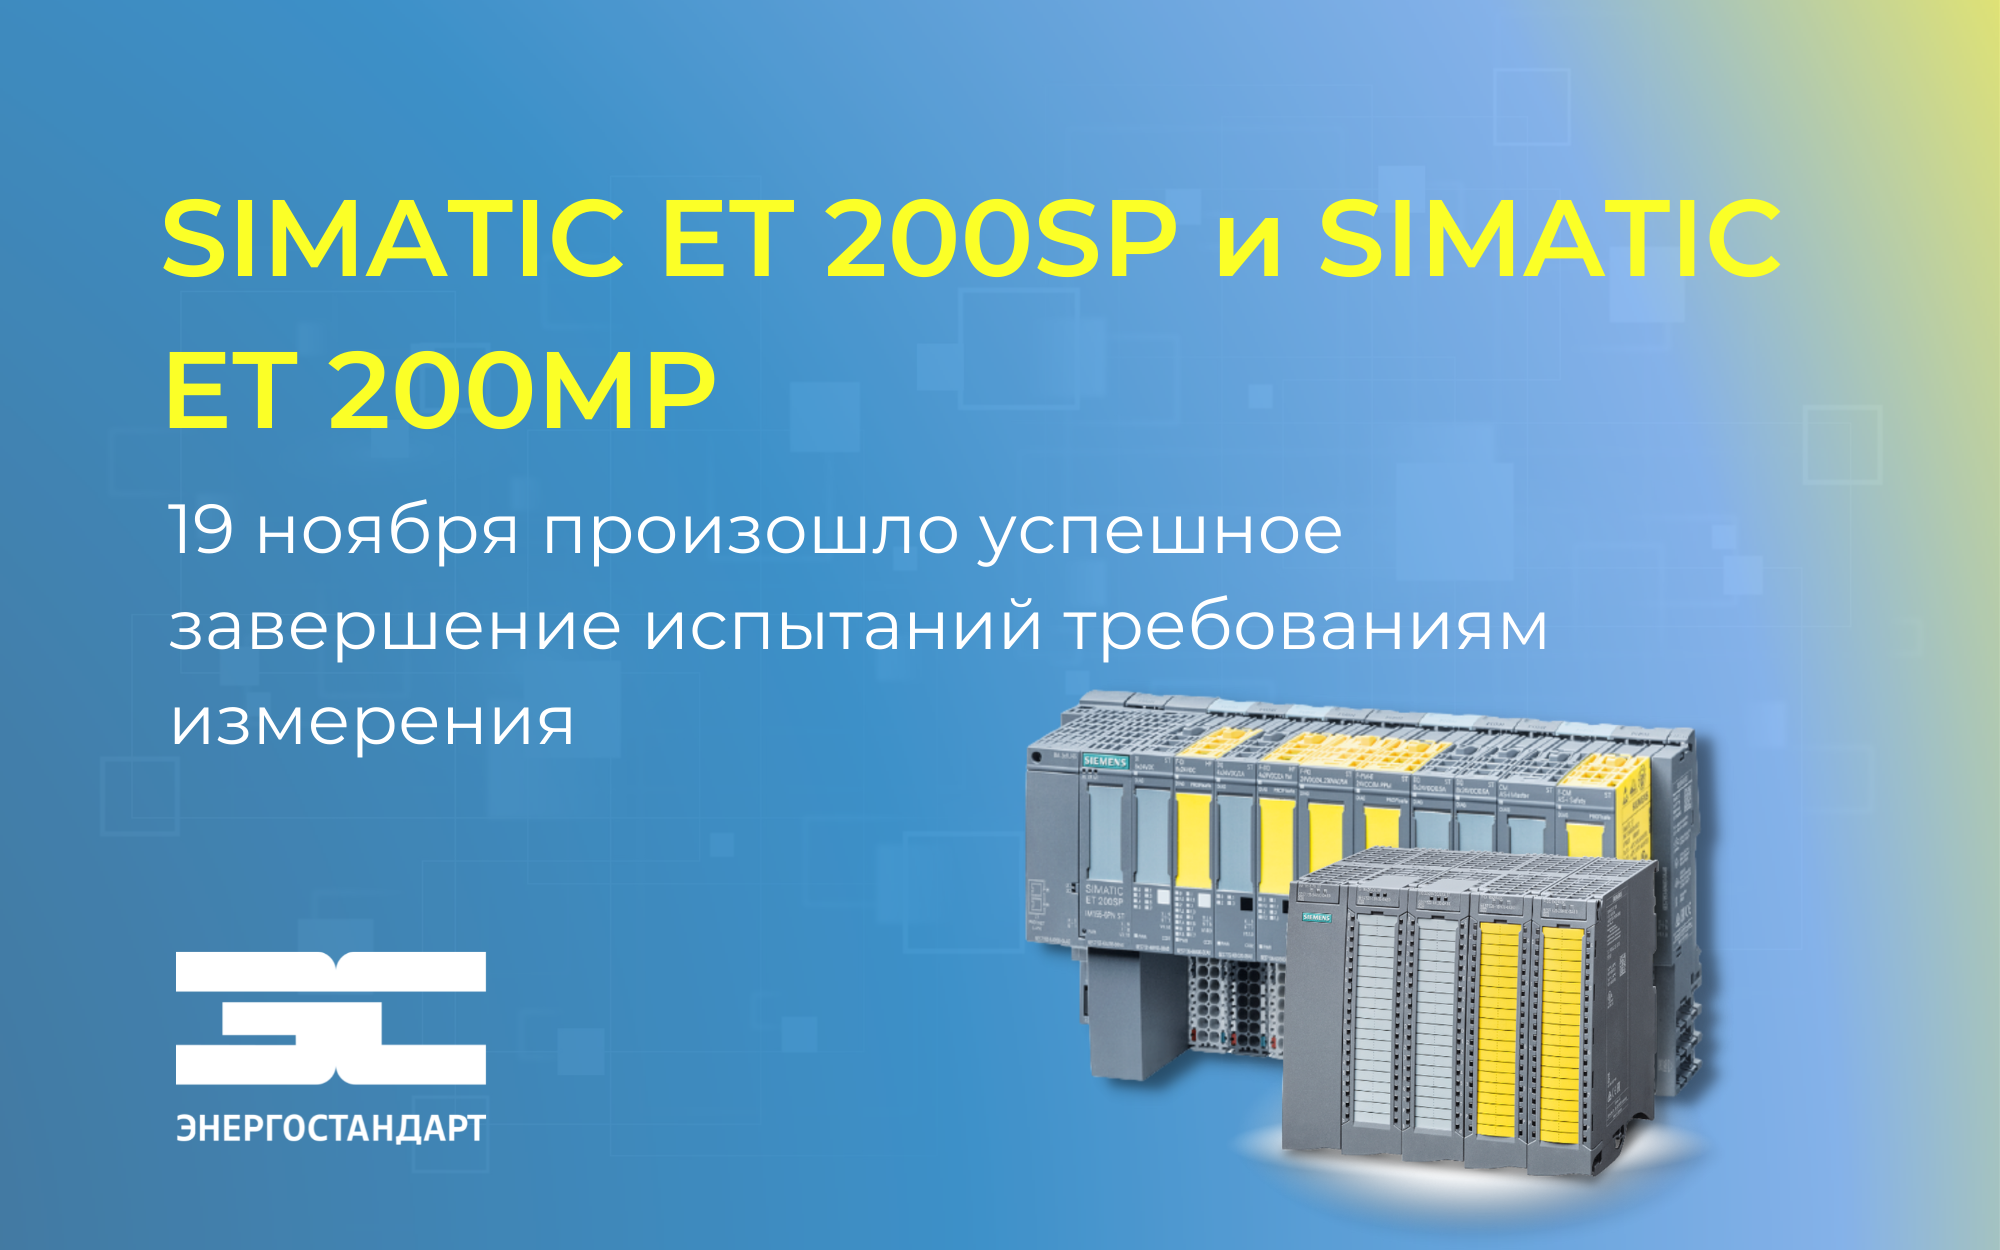 SIMATIC ET 200SP и SIMATIC ET 200MP - расширение метрологического сертификата<